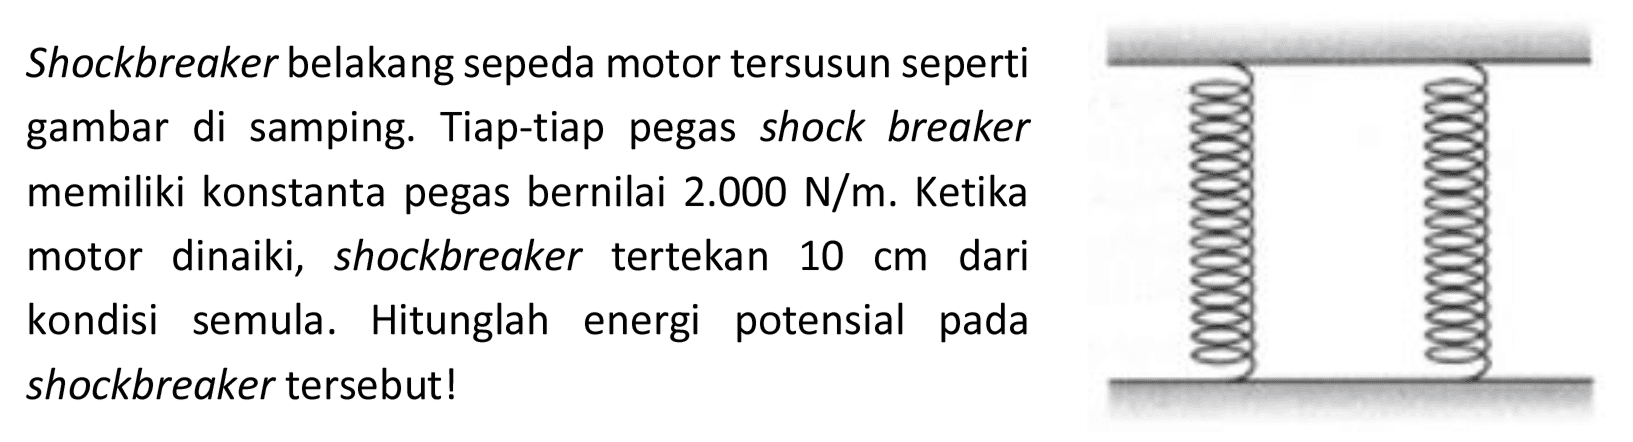 Shockbreaker belakang sepeda motor tersusun seperti
gambar di samping. Tiap-tiap pegas shock breaker
memiliki konstanta pegas bernilai  2.000 ~N / m . Ketika
motor dinaiki, shockbreaker tertekan  10 cm  dari
kondisi semula. Hitunglah energi potensial pada
shockbreaker tersebut!